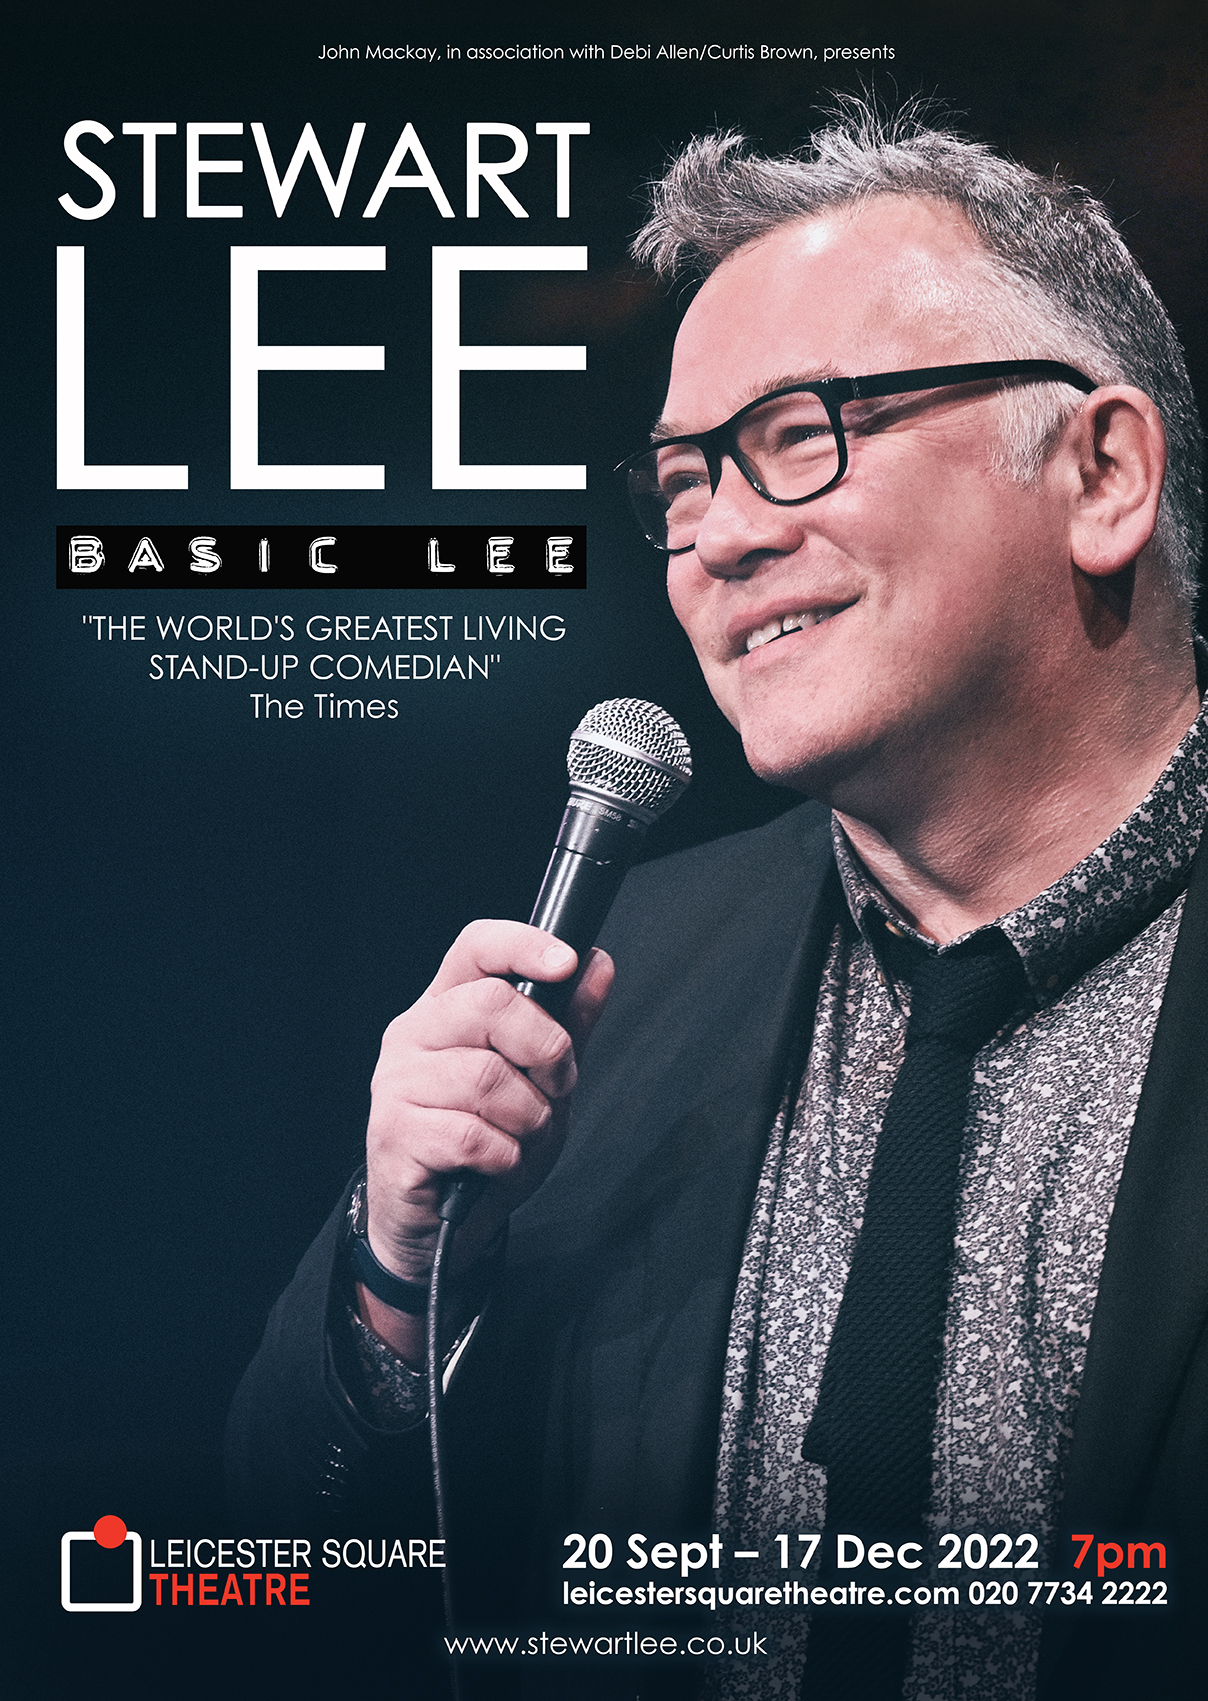 September 2022 - Basic Lee opens in London